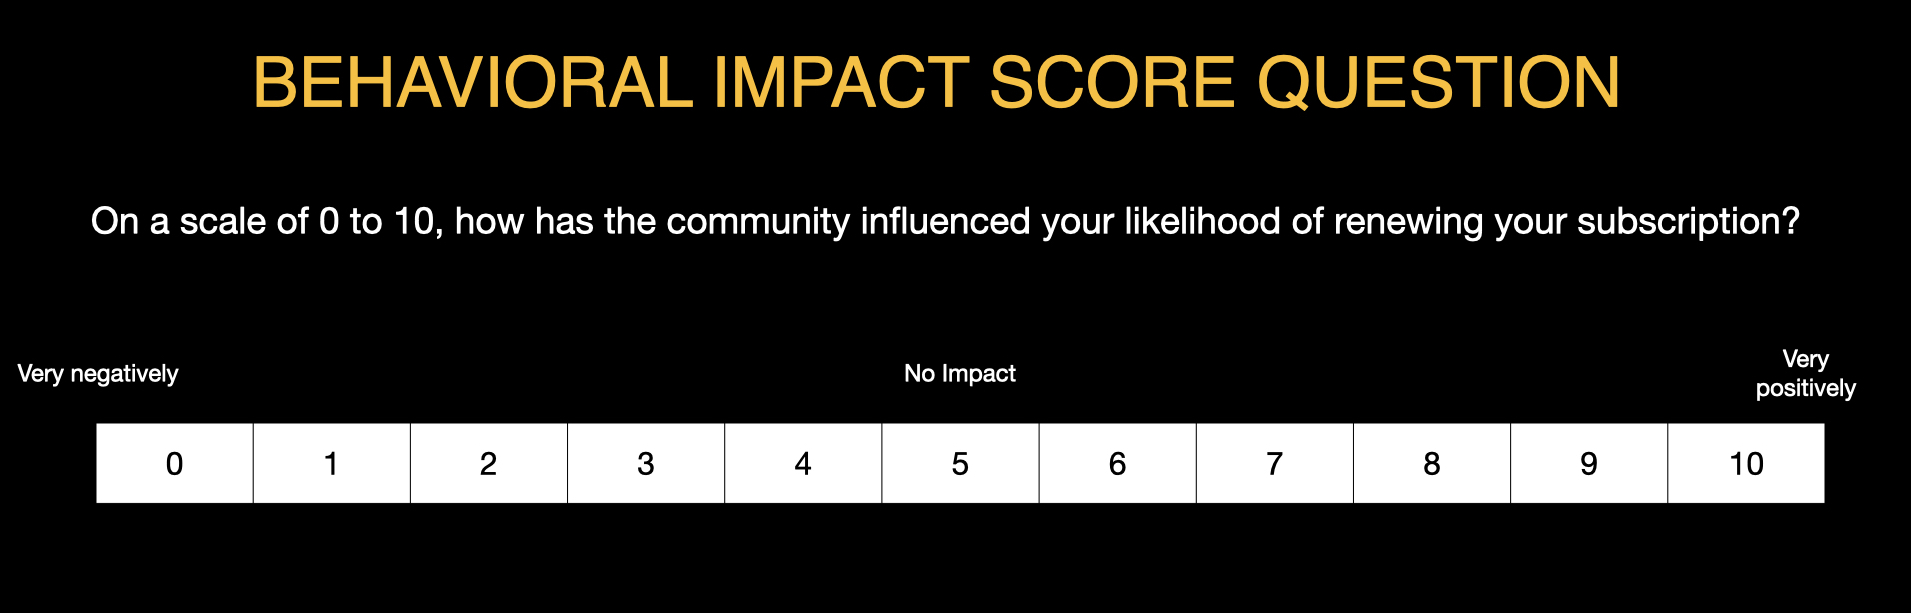 Behavioral Impact Score Question